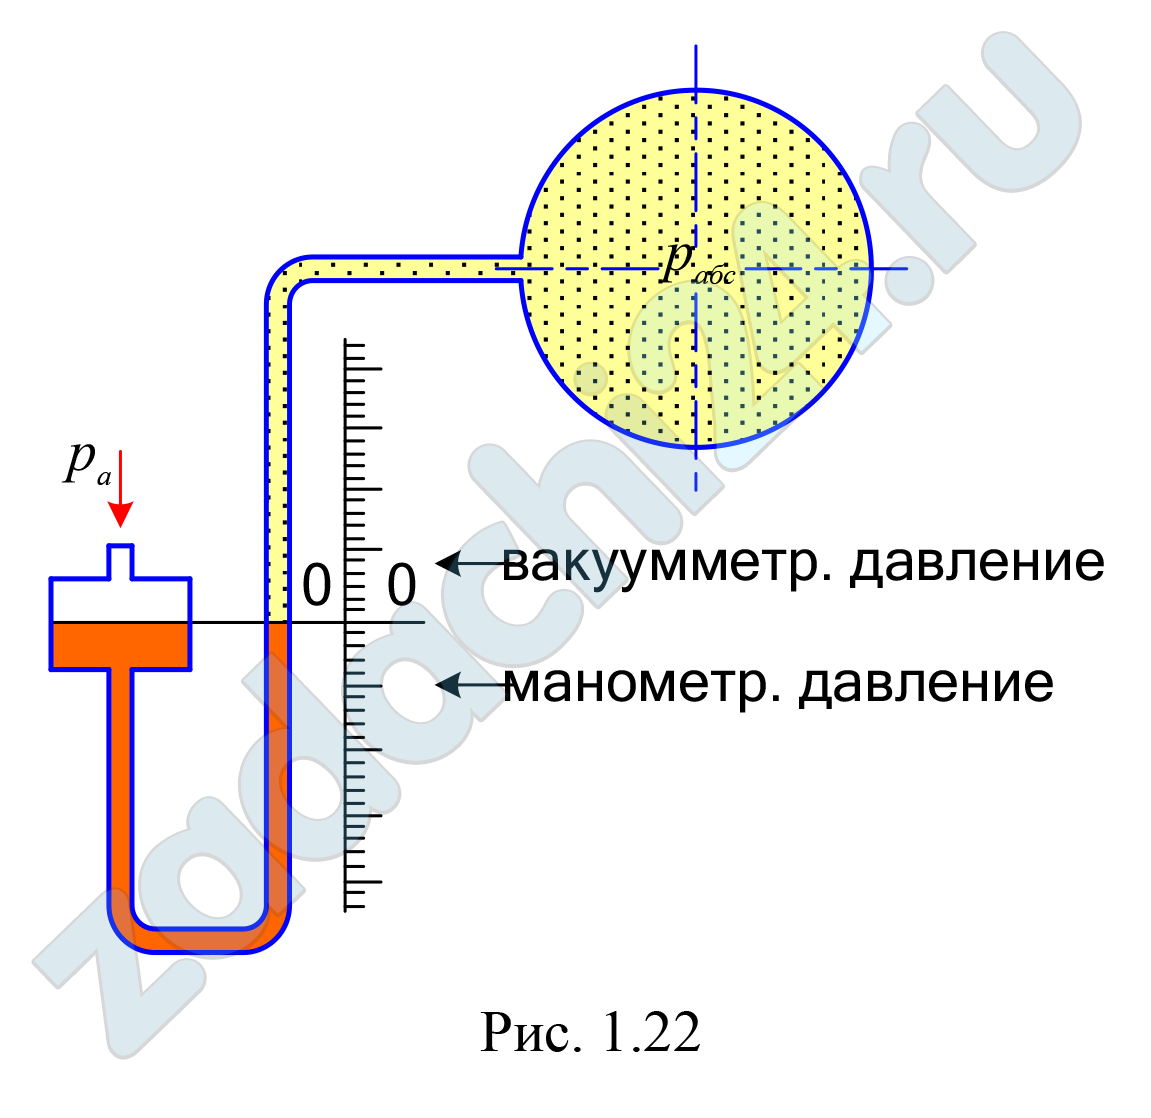 Чашечный ртутный мановакуумметр предназначен для измерения как манометрического, так и вакуумметрического давления (рис. 1.22). Отсчёты от нуля прибора вниз соответствуют манометрическому давлению, вверх – вакуумметрическому давлению. Для измерения давления в пределах 300 мм рт. ст. шкалу прибора можно считать с постоянным нулём. Определить показание мановакуумметра (hрт1), указать положение отсчёта от 0-0 шкалы при рабс1 = 1,22 ат и атмосферном давлении ра = 740 мм рт.ст. При том же значении атмосферного давления и рабс 2 = 0,84 ат рассчитать показание мановакуумметра (hрт2), указать положение отсчёта от 0-0 шкалы.